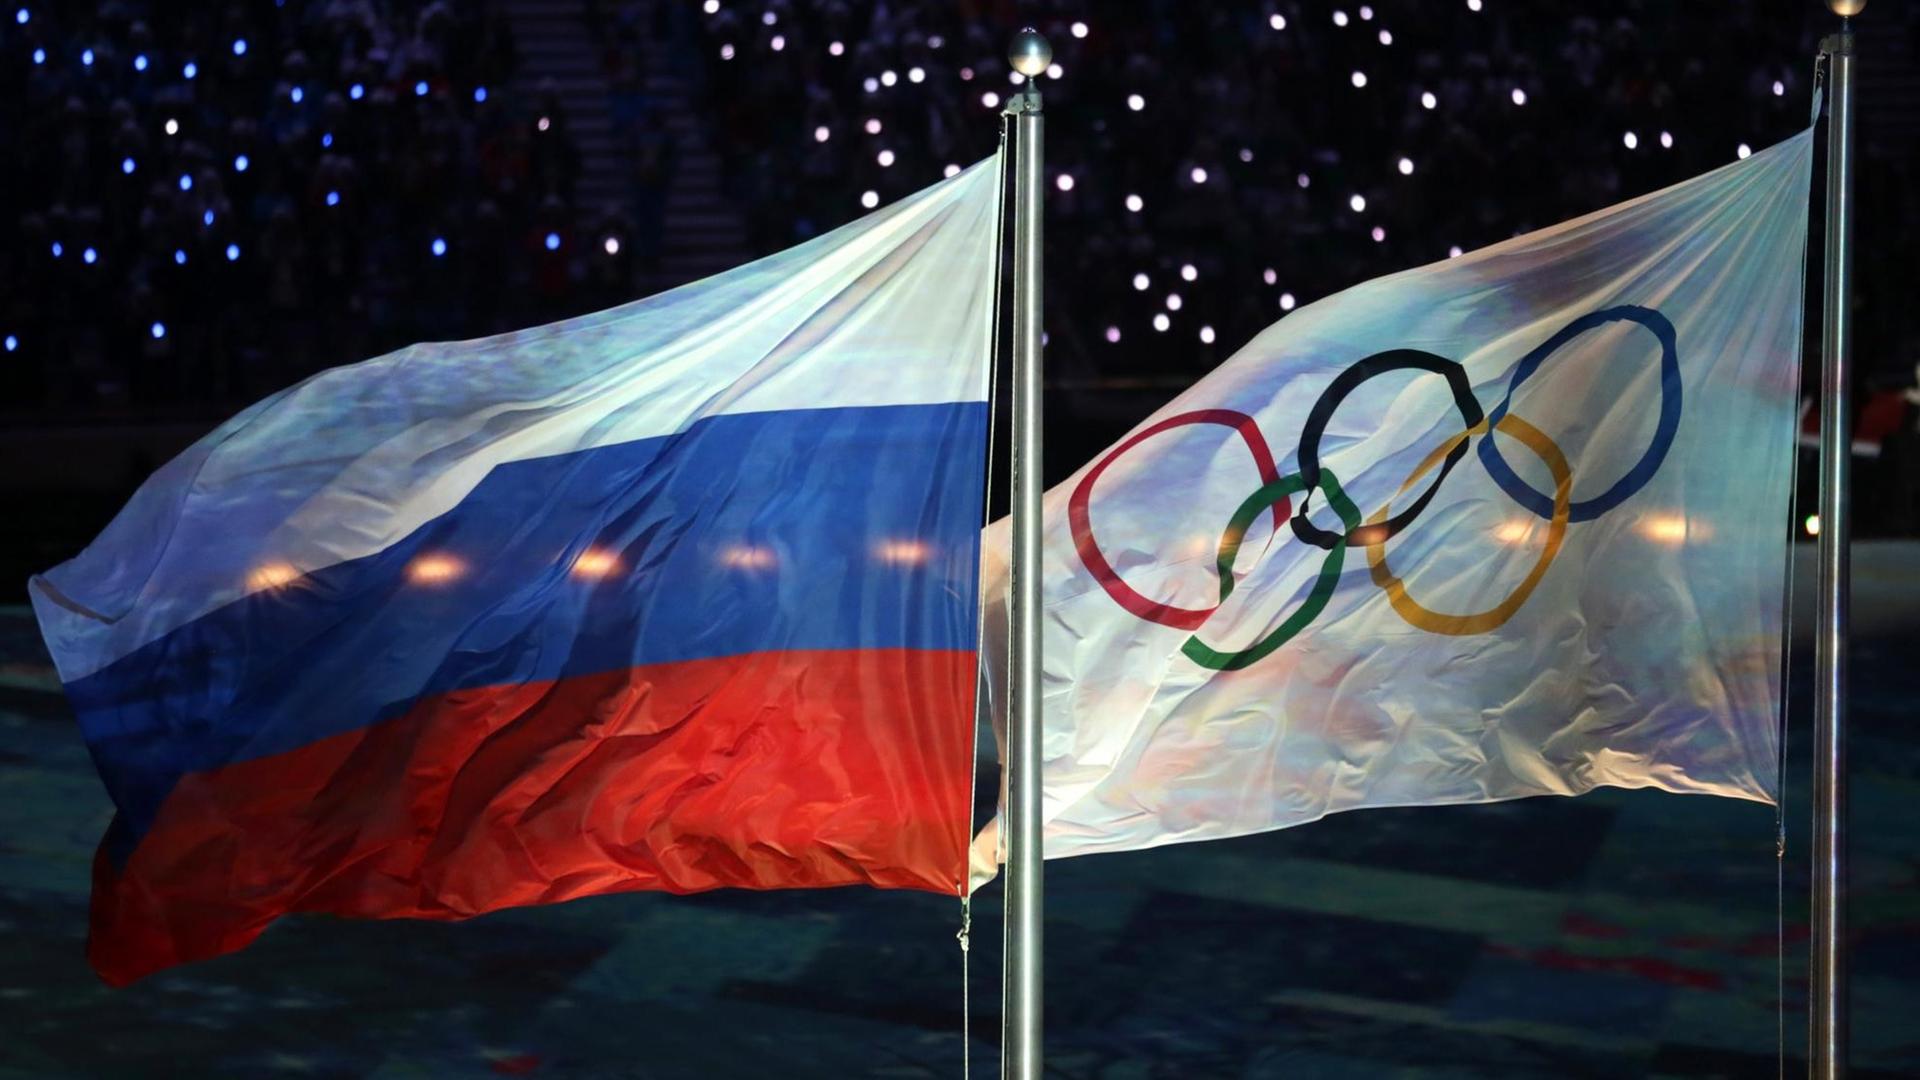 Die Olympische Flagge (r) und die russische Flagge flattern am 23.02.2014 während der Abschlussfeier bei den Olympischen Spielen 2014 in Sotschi, Russland.